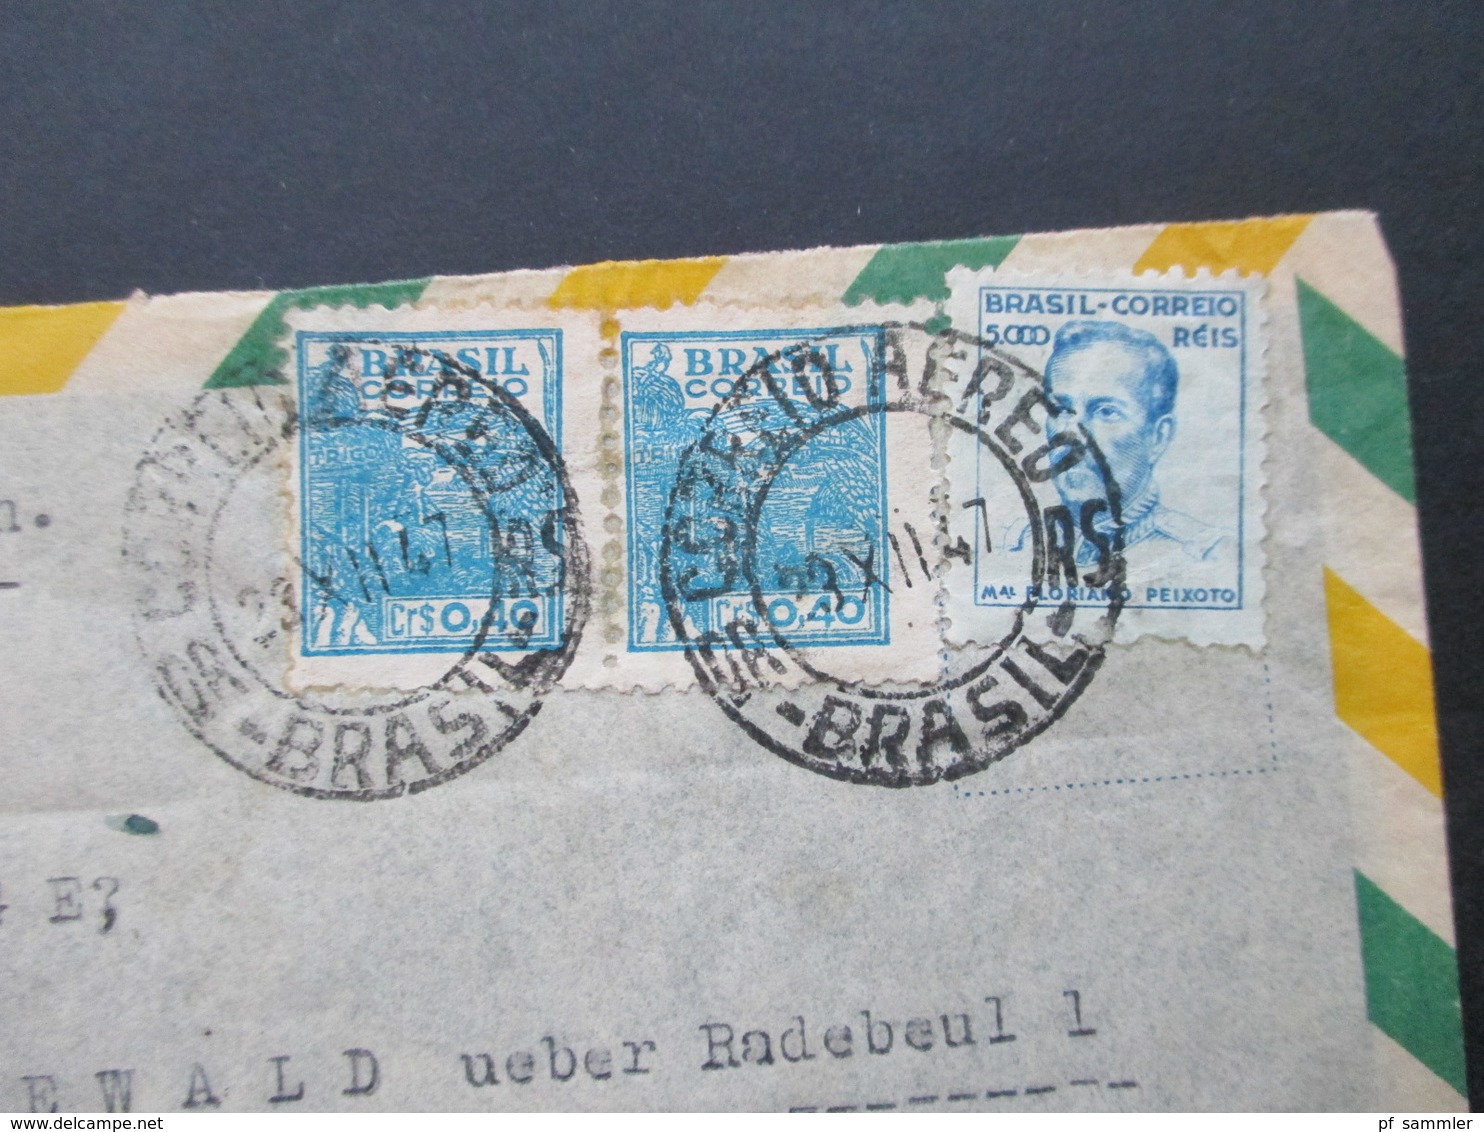 Brasilien 1947 Luftpostbrief Nach Friedewald Mit Ak Stempel Berlin Paolo Roscher Reprensentante Rua Carlos V. Koseritz - Cartas & Documentos